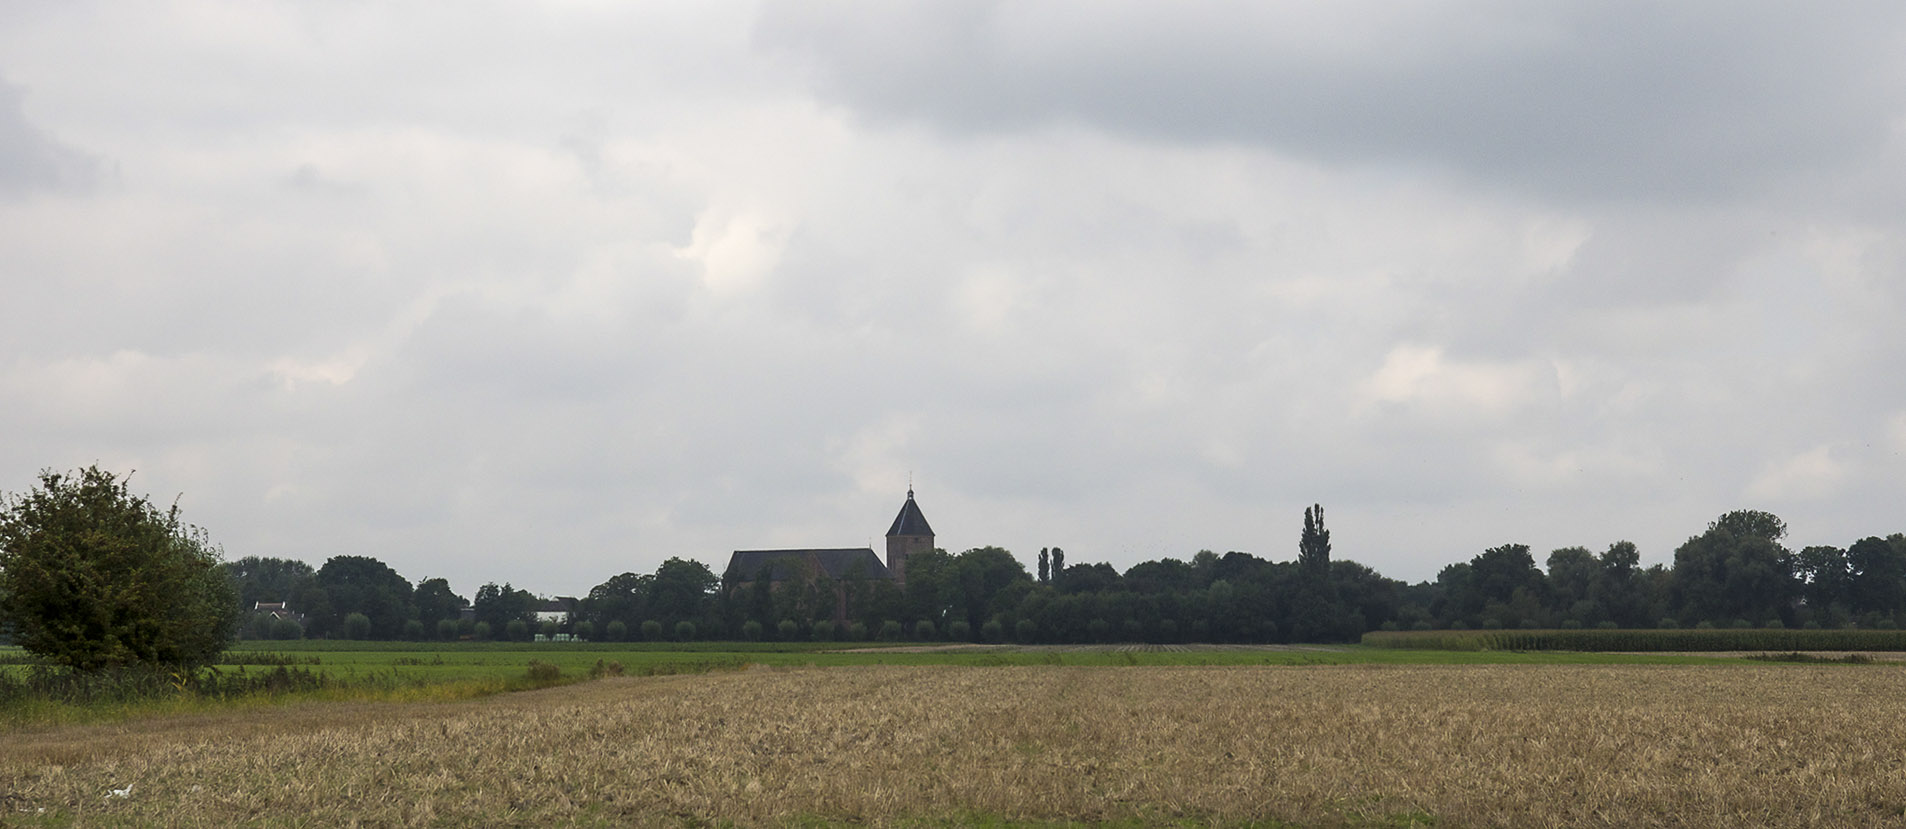 kerk in landschap